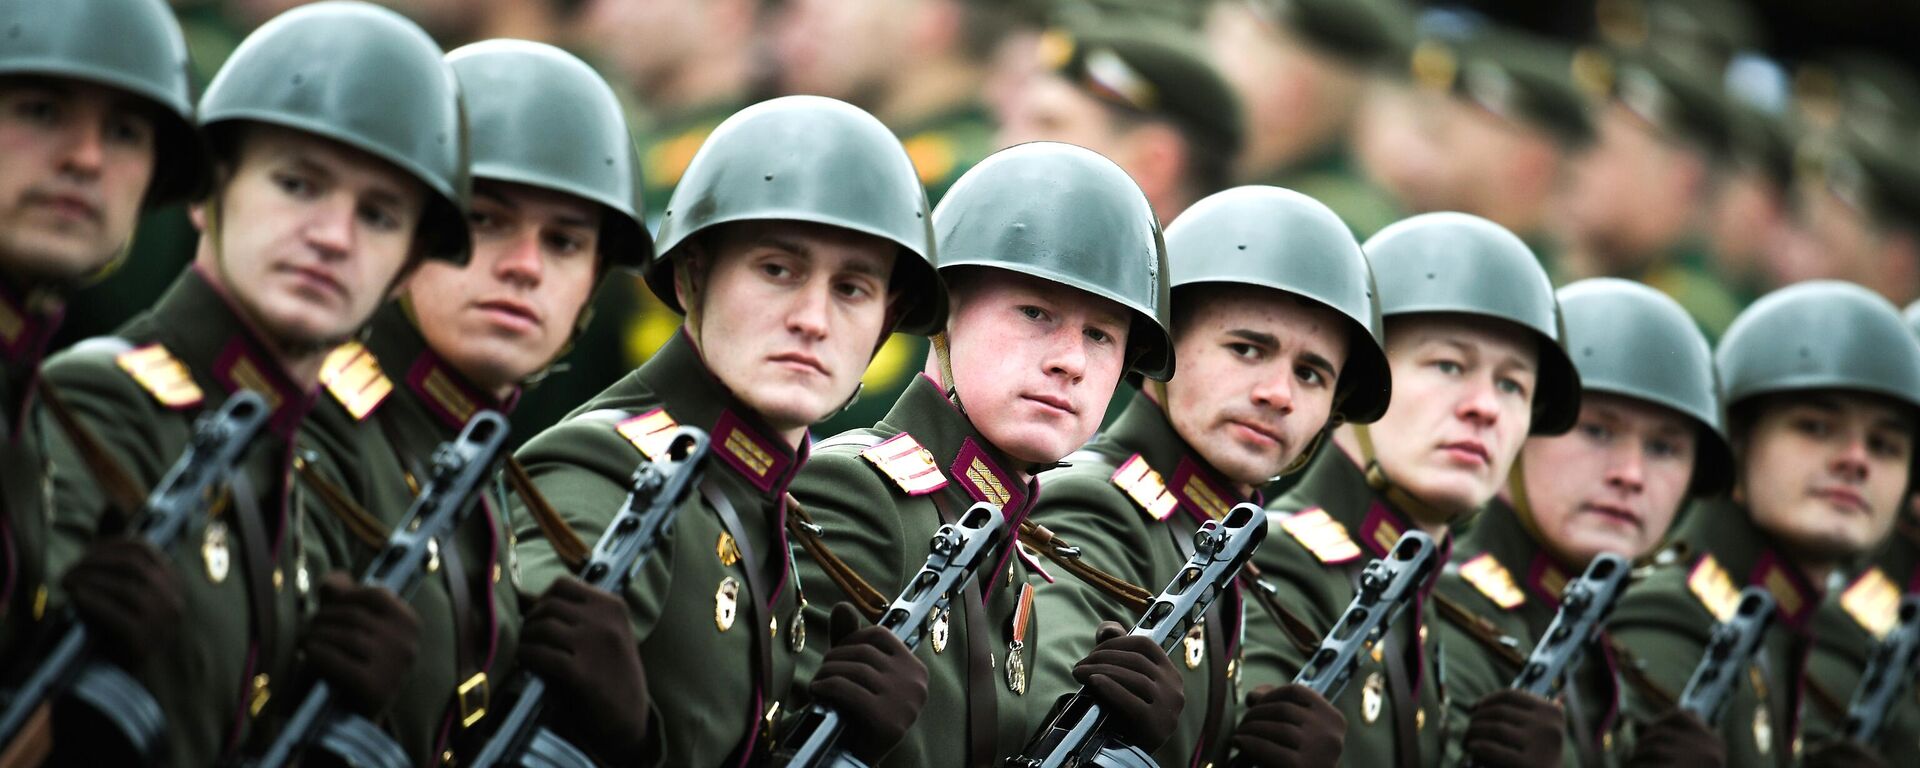 Военный парад в честь 76-й годовщины Победы - Sputnik Таджикистан, 1920, 12.05.2021